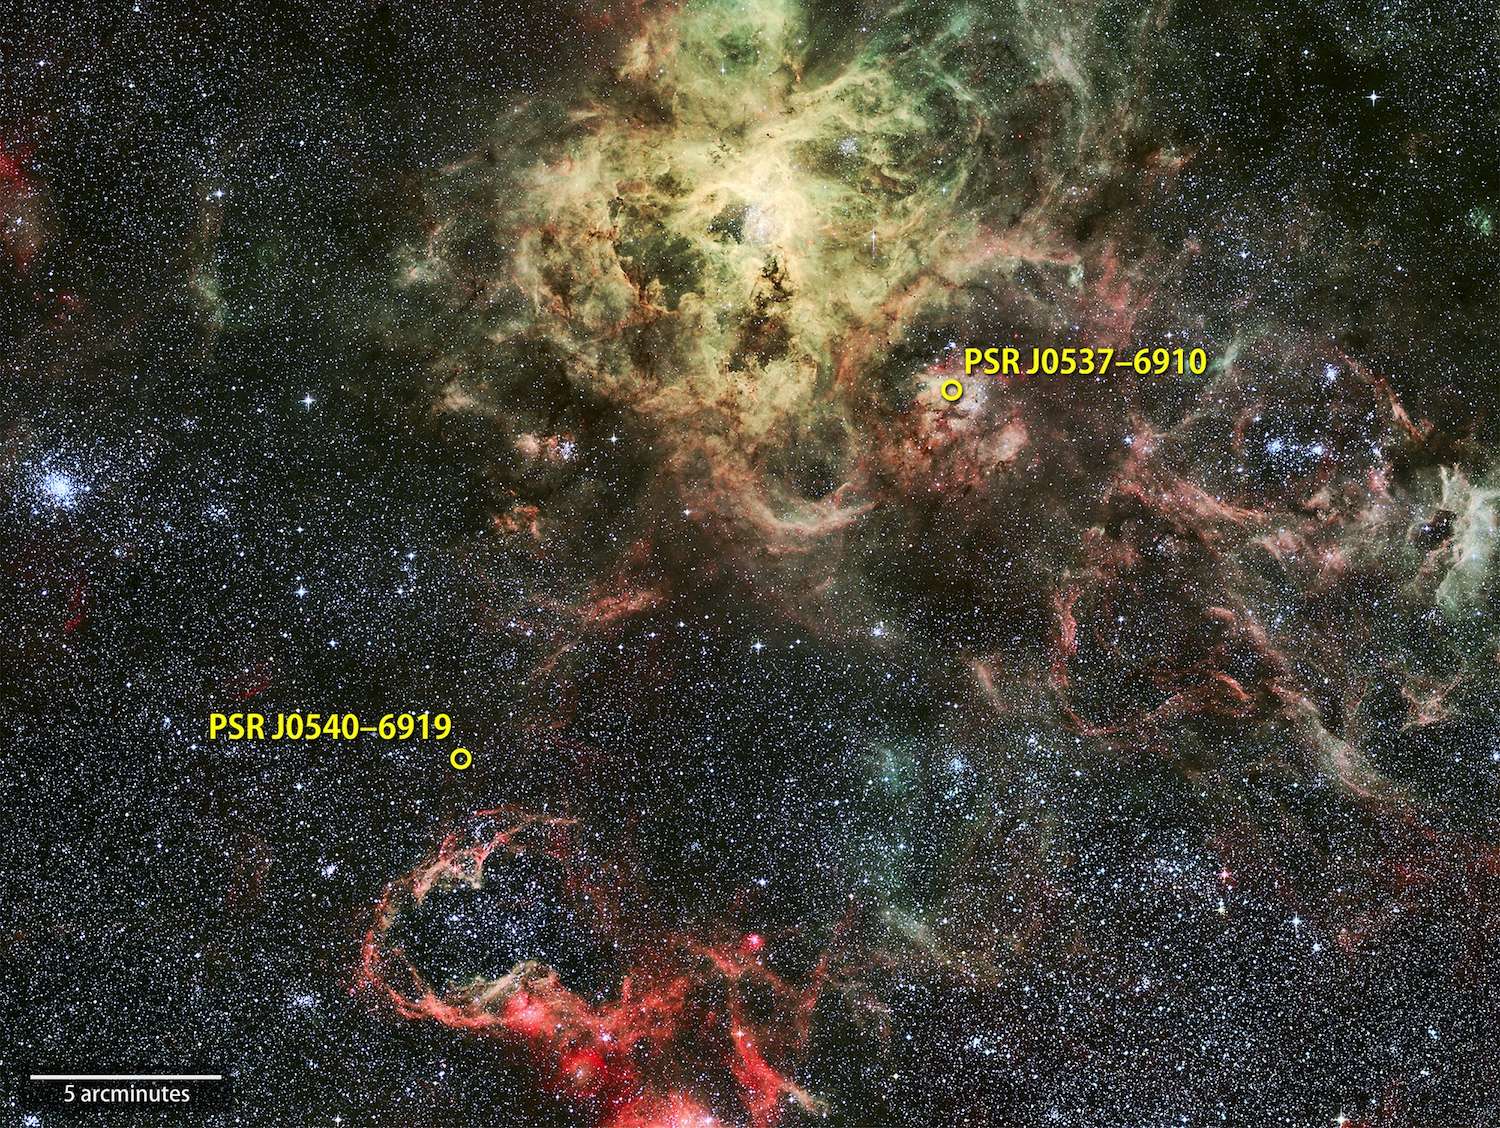 PSR J0540-6919 (ou J0540 pour faire court), le premier pulsar gamma extragalactique détecté se situe près de la nébuleuse de la Tarentule, vaste région active où se forment de nombreuses étoiles dans la galaxie naine du Grand Nuage de Magellan (Large Magellanic Cloud, LMC). PSR J0537−6910 est un second pulsar repéré. Avec 62 rotations par seconde, il est le plus rapide pulsar jeune connu. © Nasa, GSFC, Eso, R. Fosbury (ST-ECF)